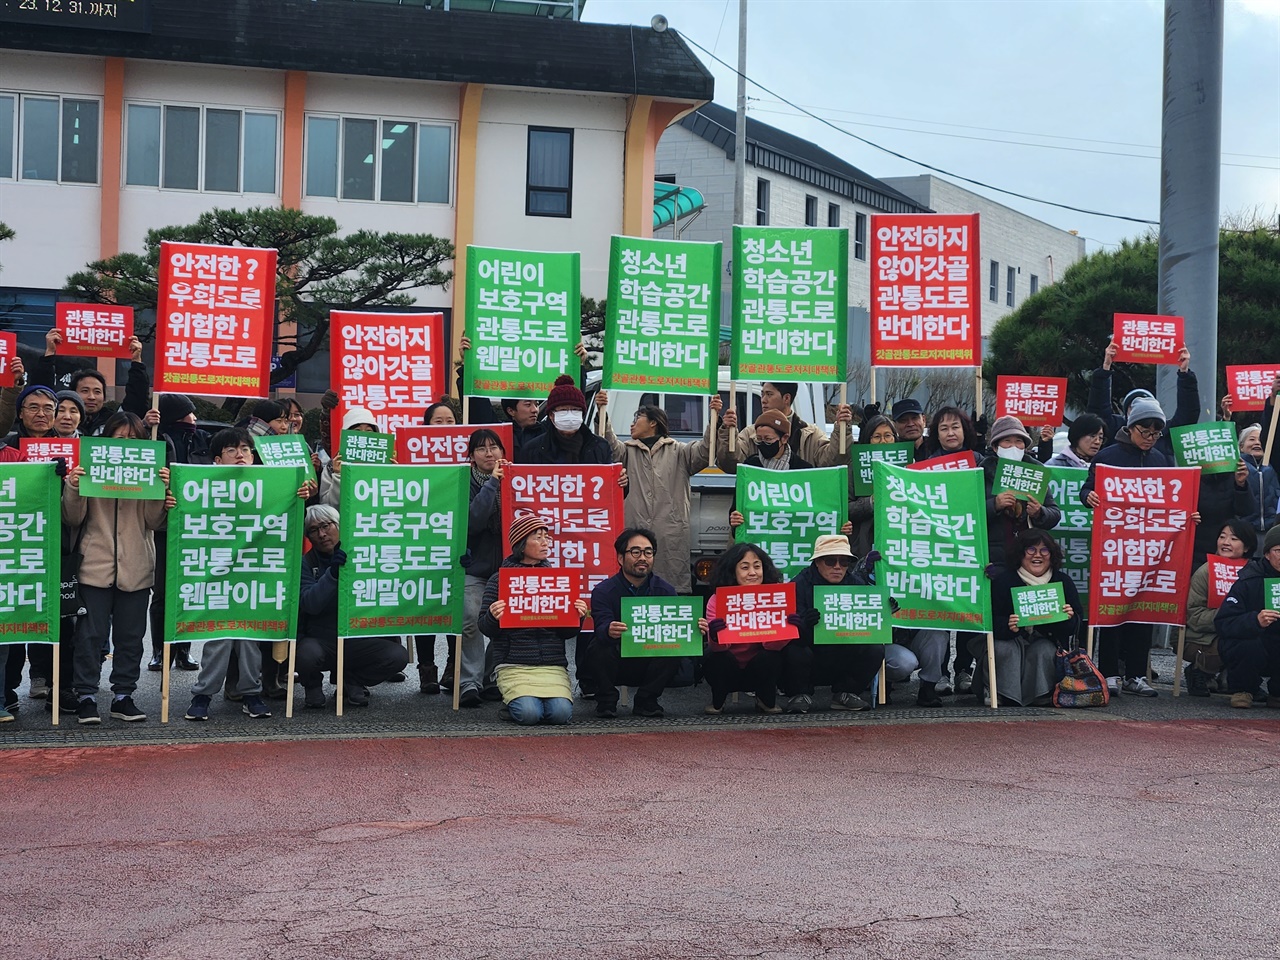 충남 홍성군 홍동면 주민들이 27일 홍동면행정복지센터 앞에서 '관통도로를 반대'하는 피켓을 들고 기념촬영을 하고 있다. 